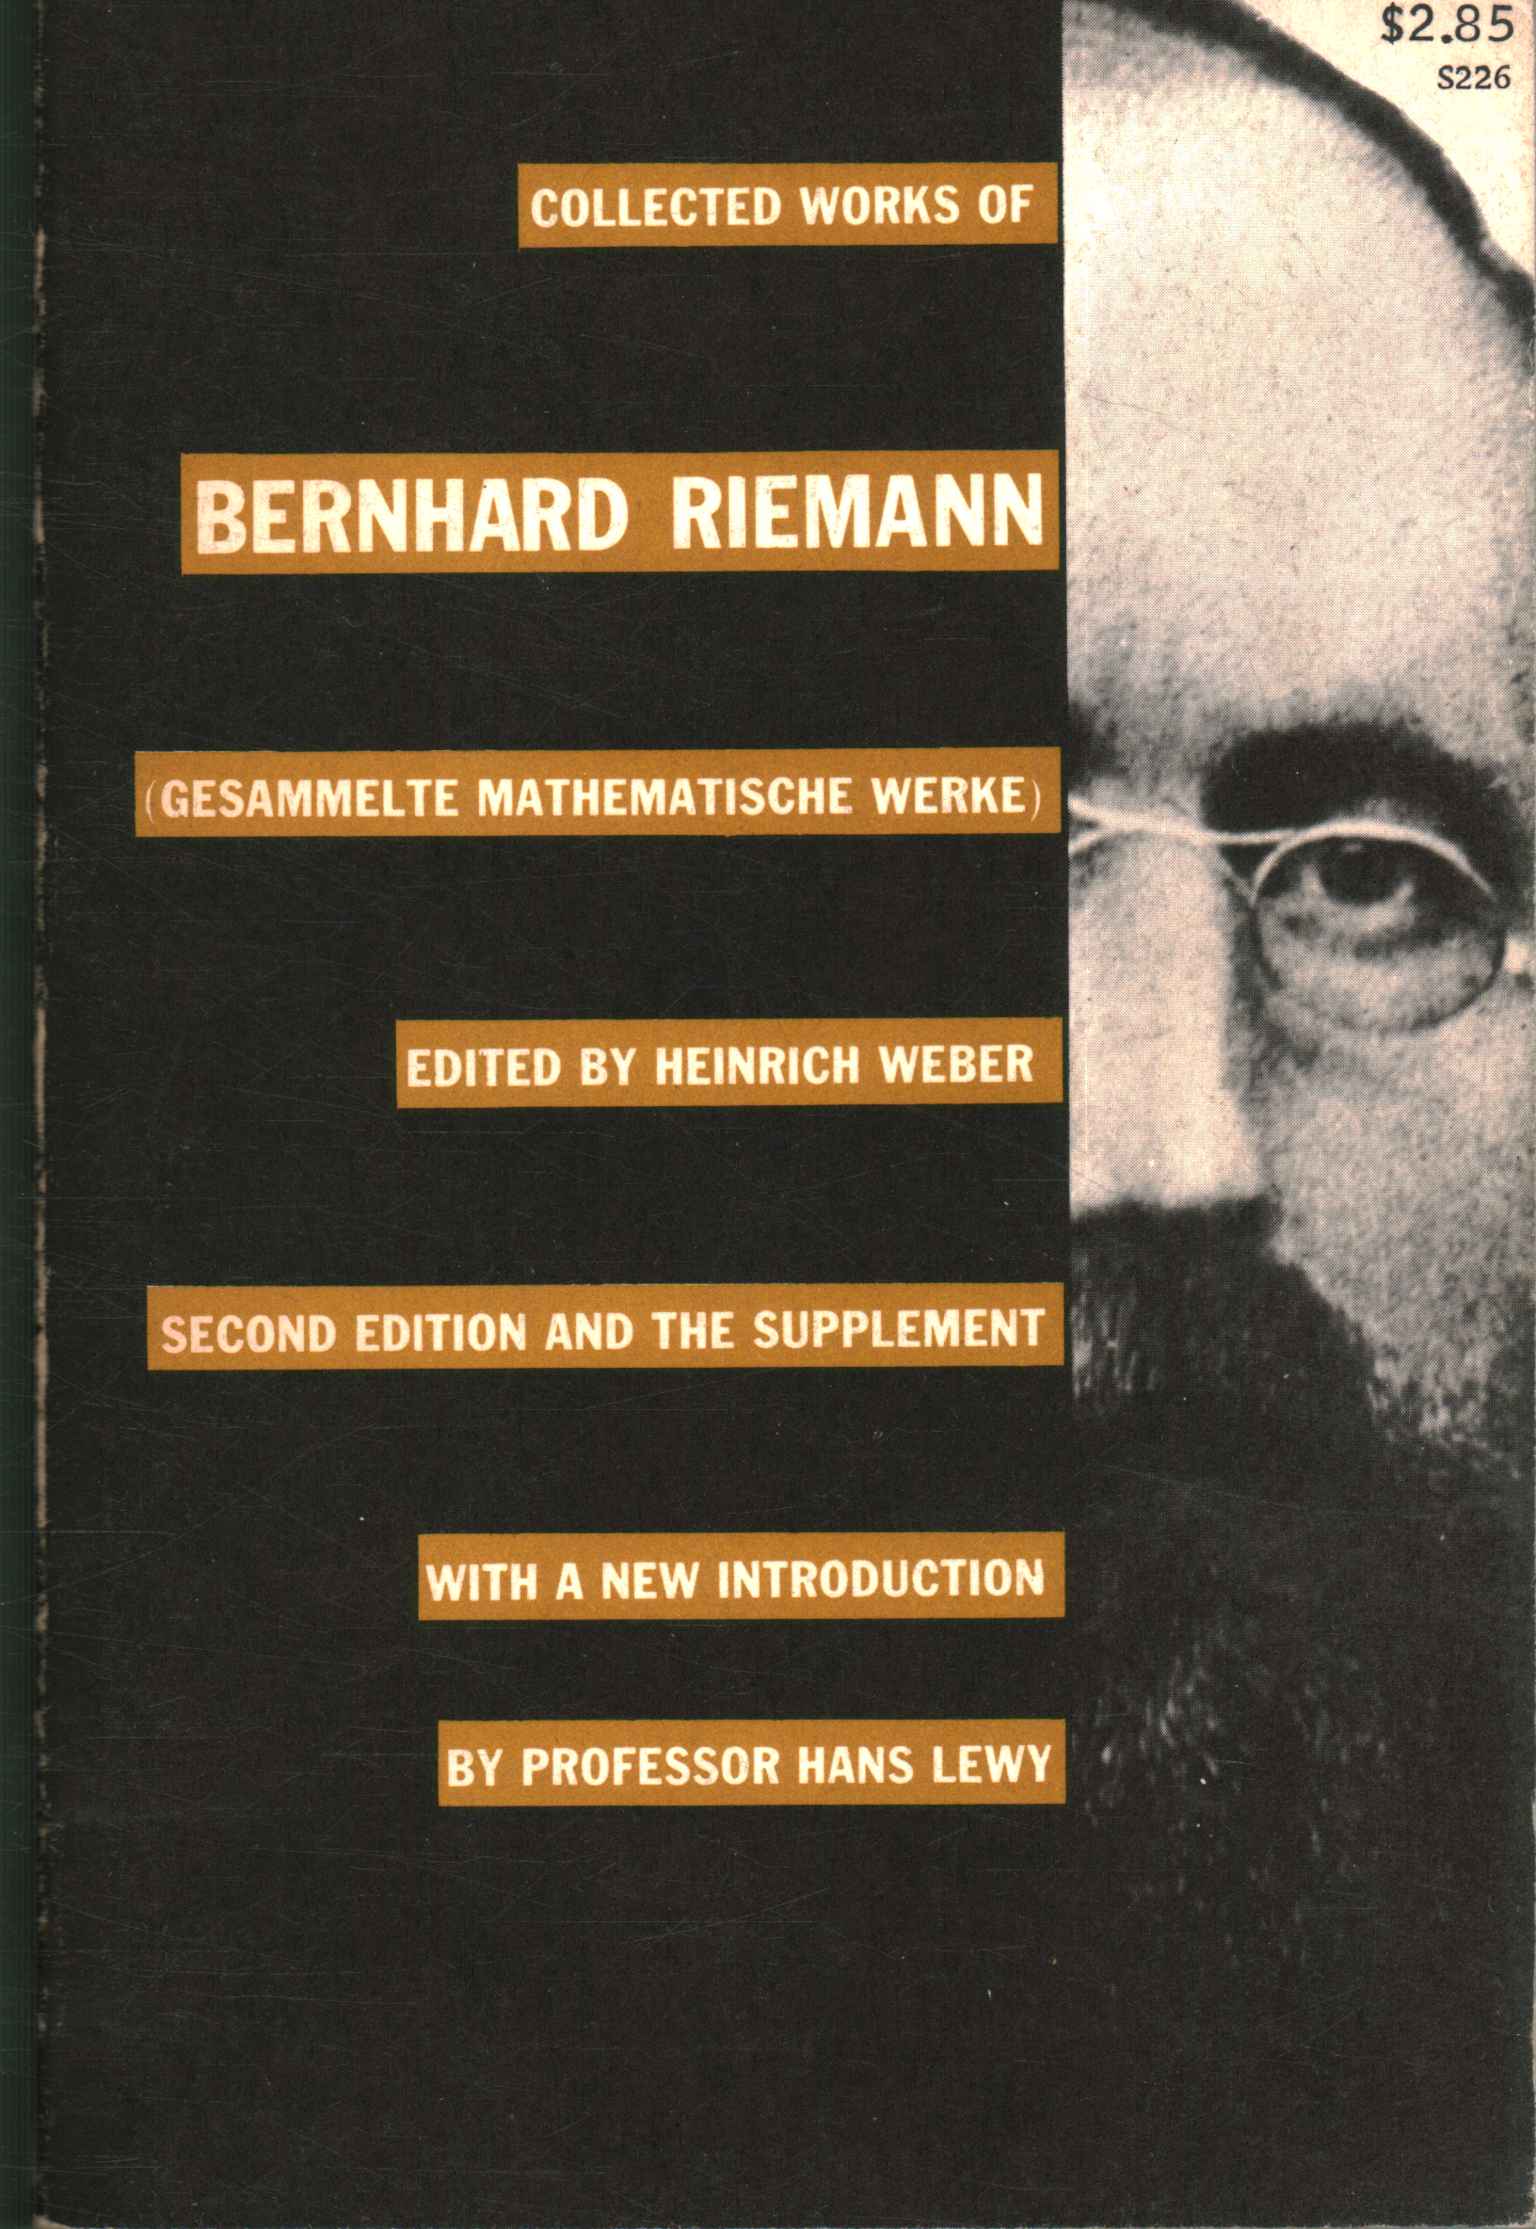 Die gesammelten Werke von Bernhard Riemann